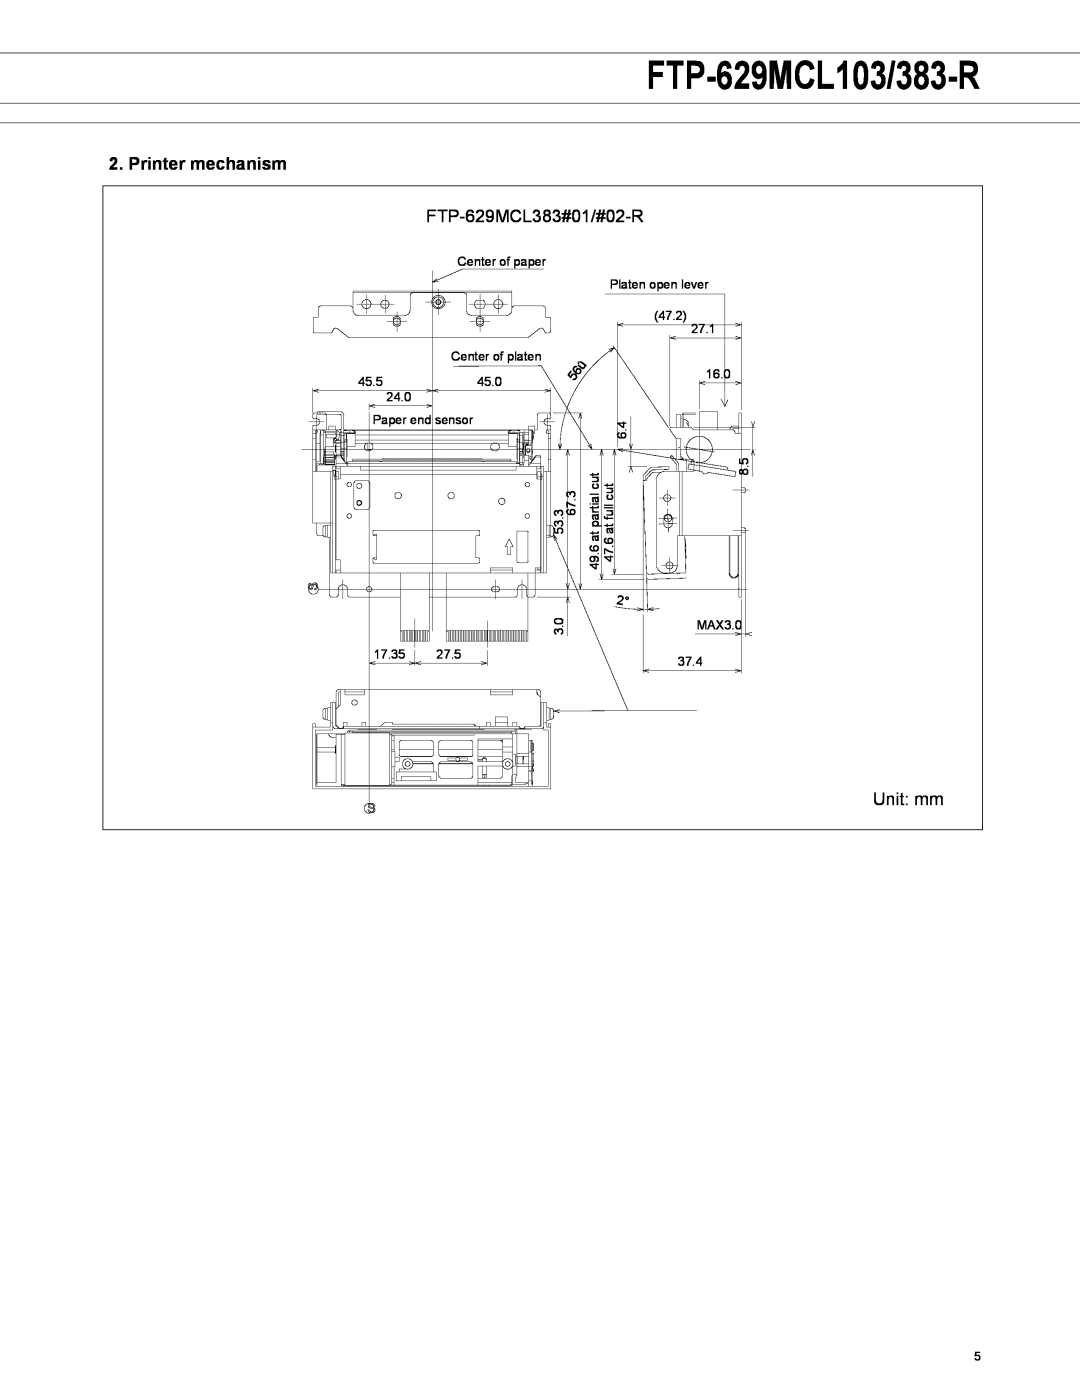 Fujitsu FTP-629MCL103-R, FTP-629MCL383-R, FTP-629DCL014R, FTP-6x9MCL103R manual FTP-629MCL103/383-R, Printer mechanism 